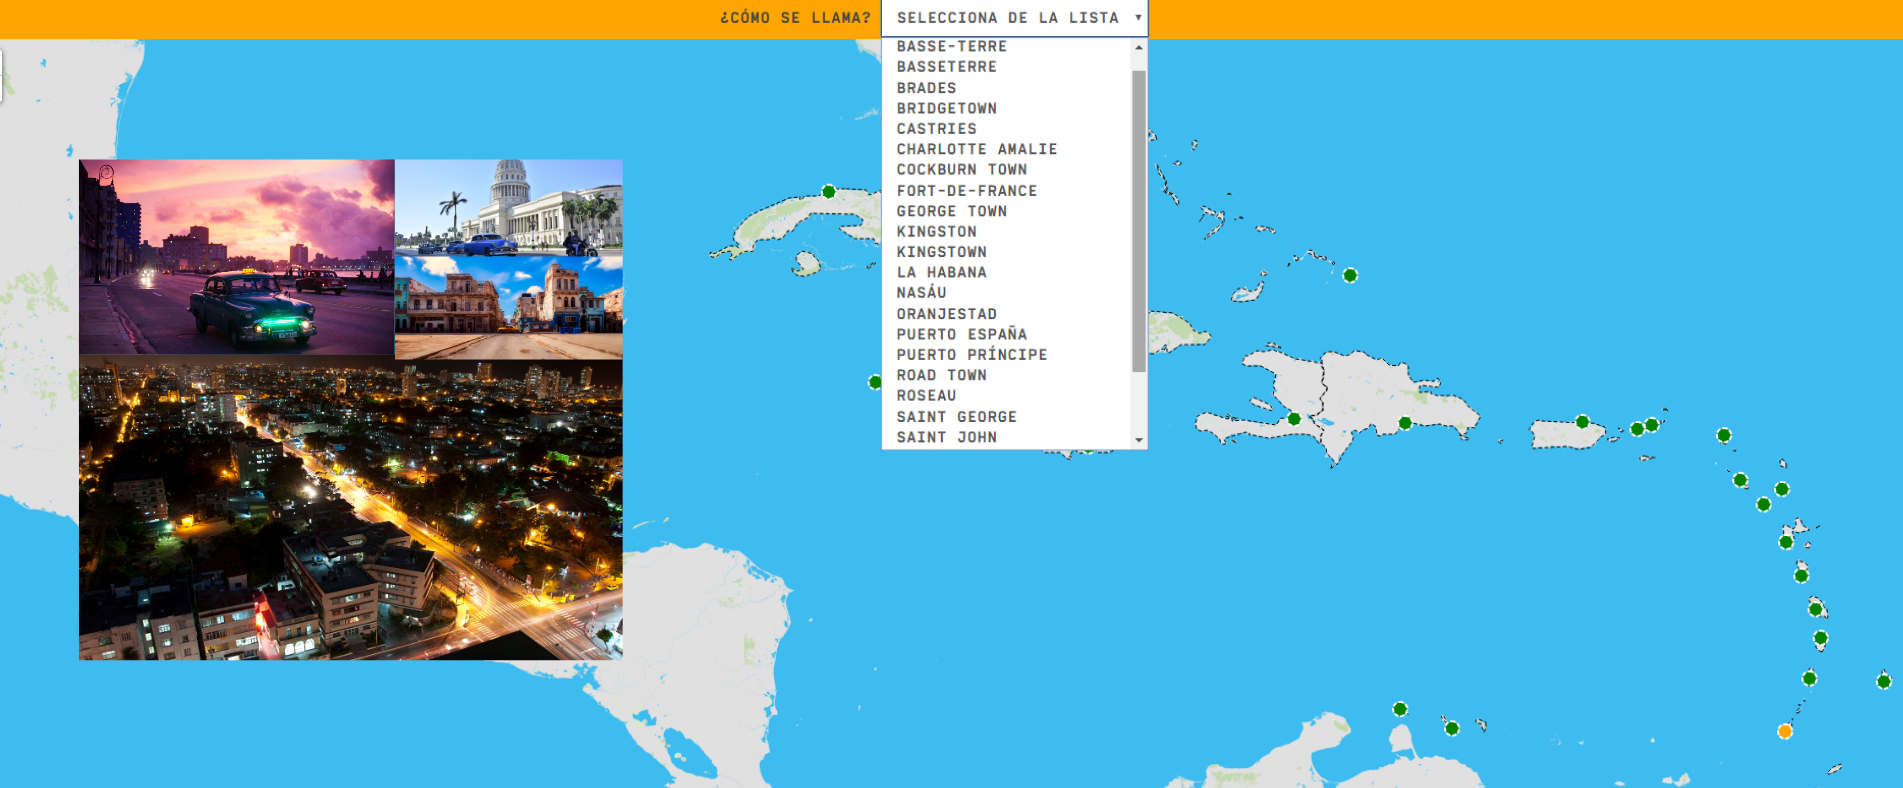 Die Karibik: Hauptstädte